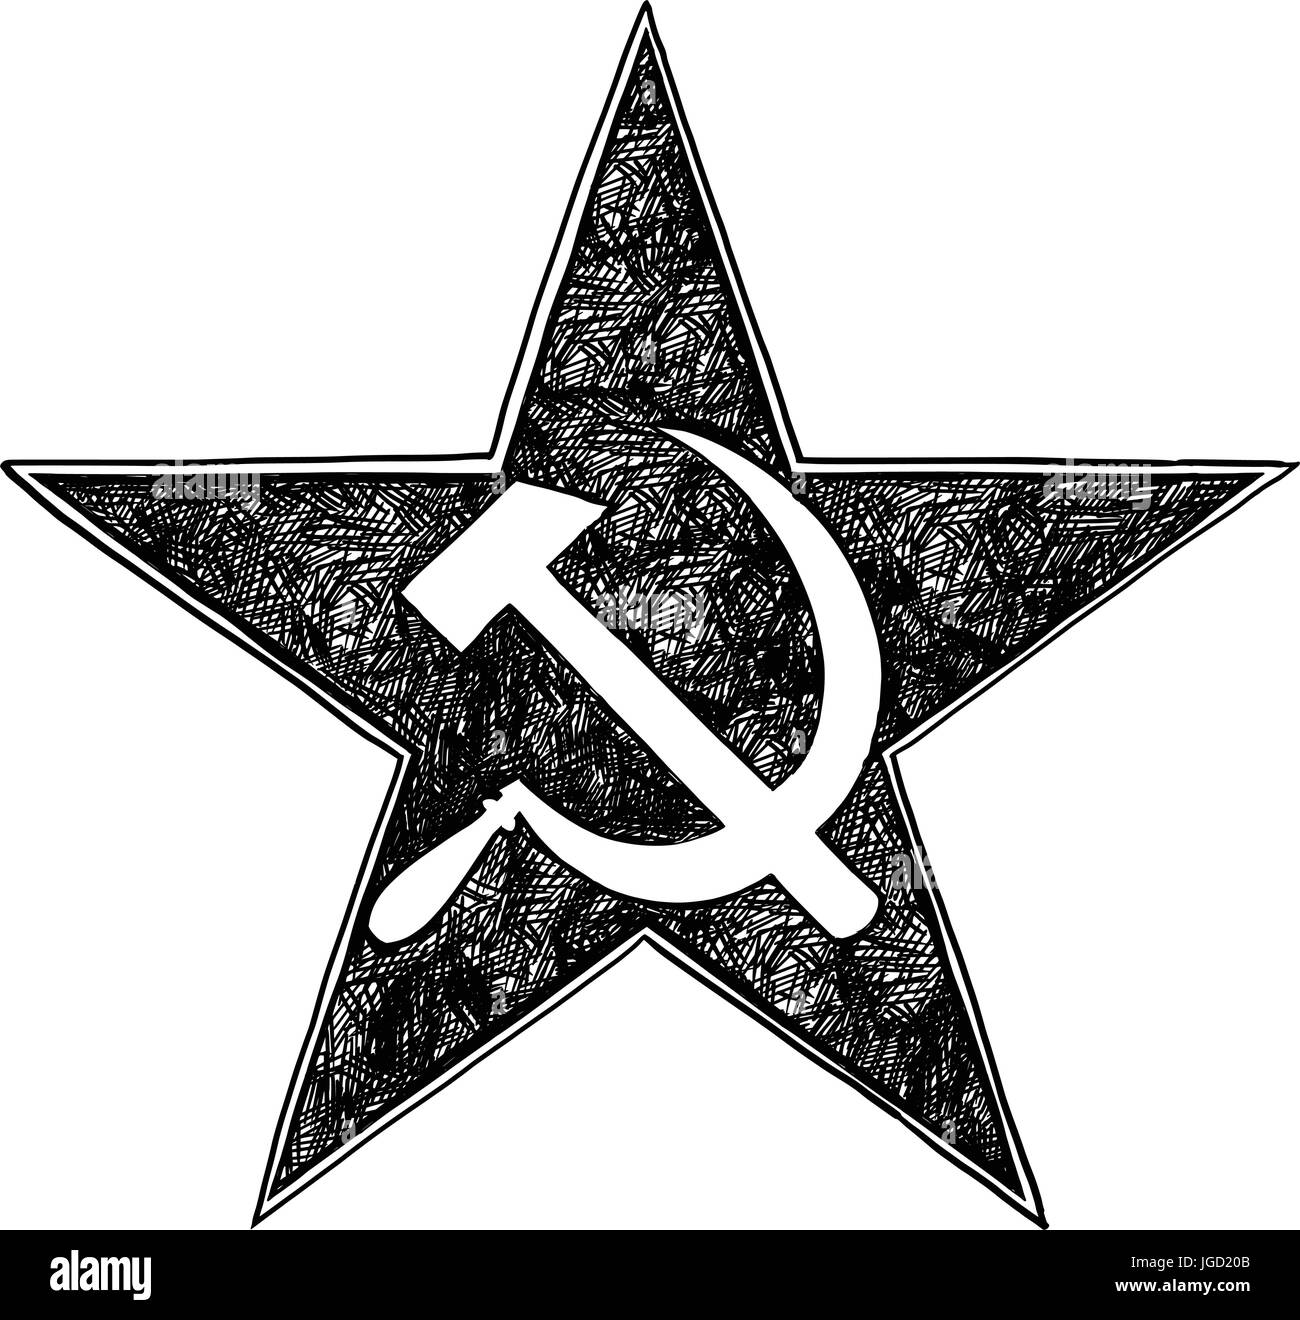 Falce e martello dentro star- simbolo del comunismo e Unione Sovietica Illustrazione Vettoriale